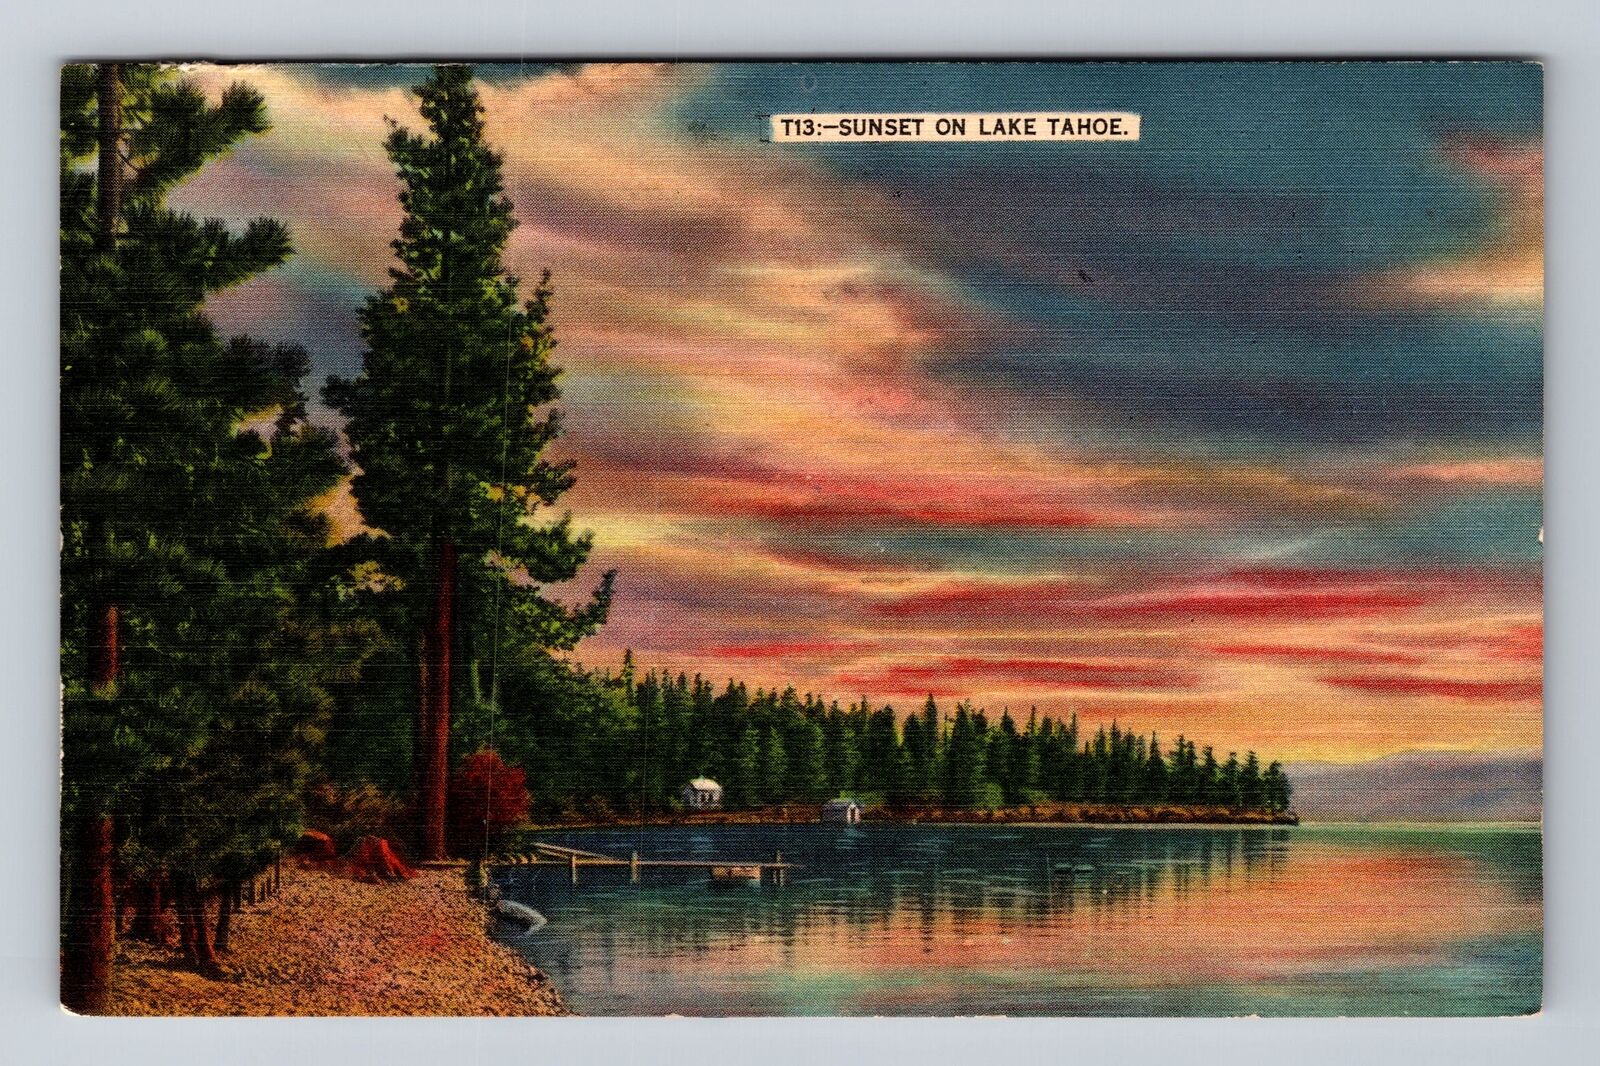 Lake Tahoe CA-California, Sunset on Lake Tahoe Antique Souvenir Vintage Postcard